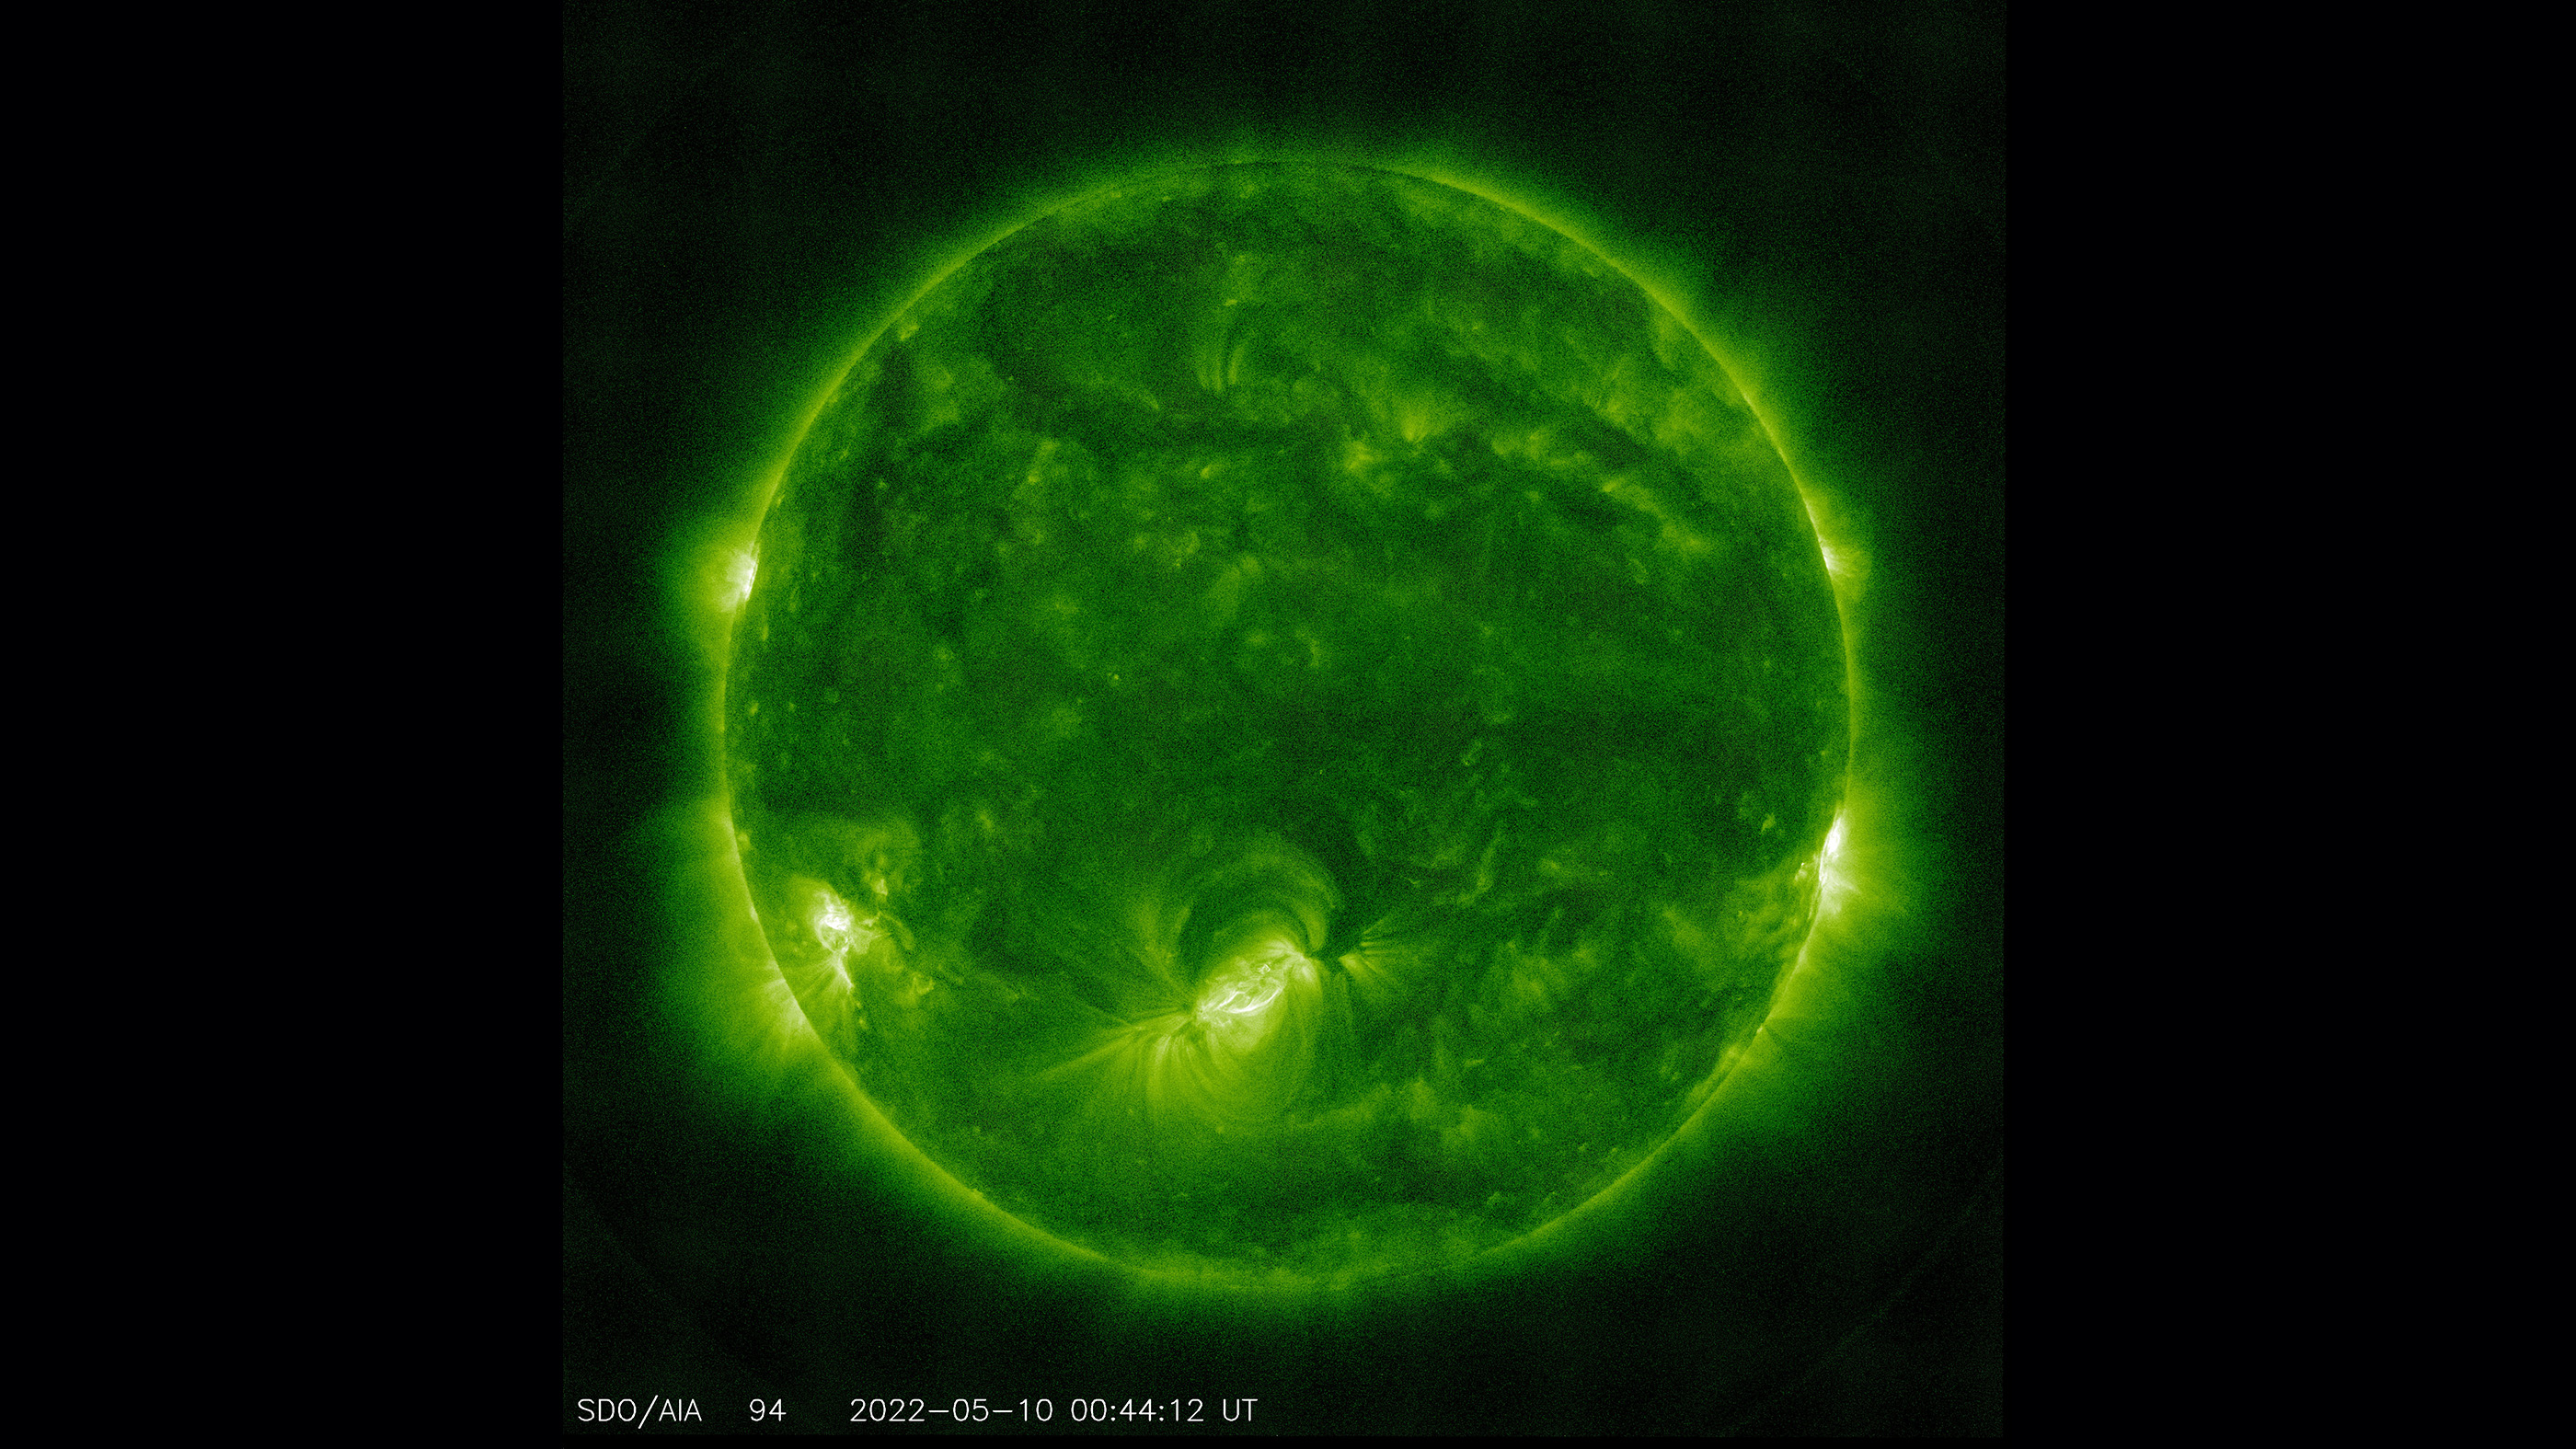 Kort voor 9.00 uur in New York op dinsdag, toen het Solar Dynamics Observatory deze foto van de zon nam op een golflengte van 94 angstrom, zond zonnevlekkengebied AR3006 (onderaan in het midden) een krachtige zonnevlam uit, gewaardeerd X1,5